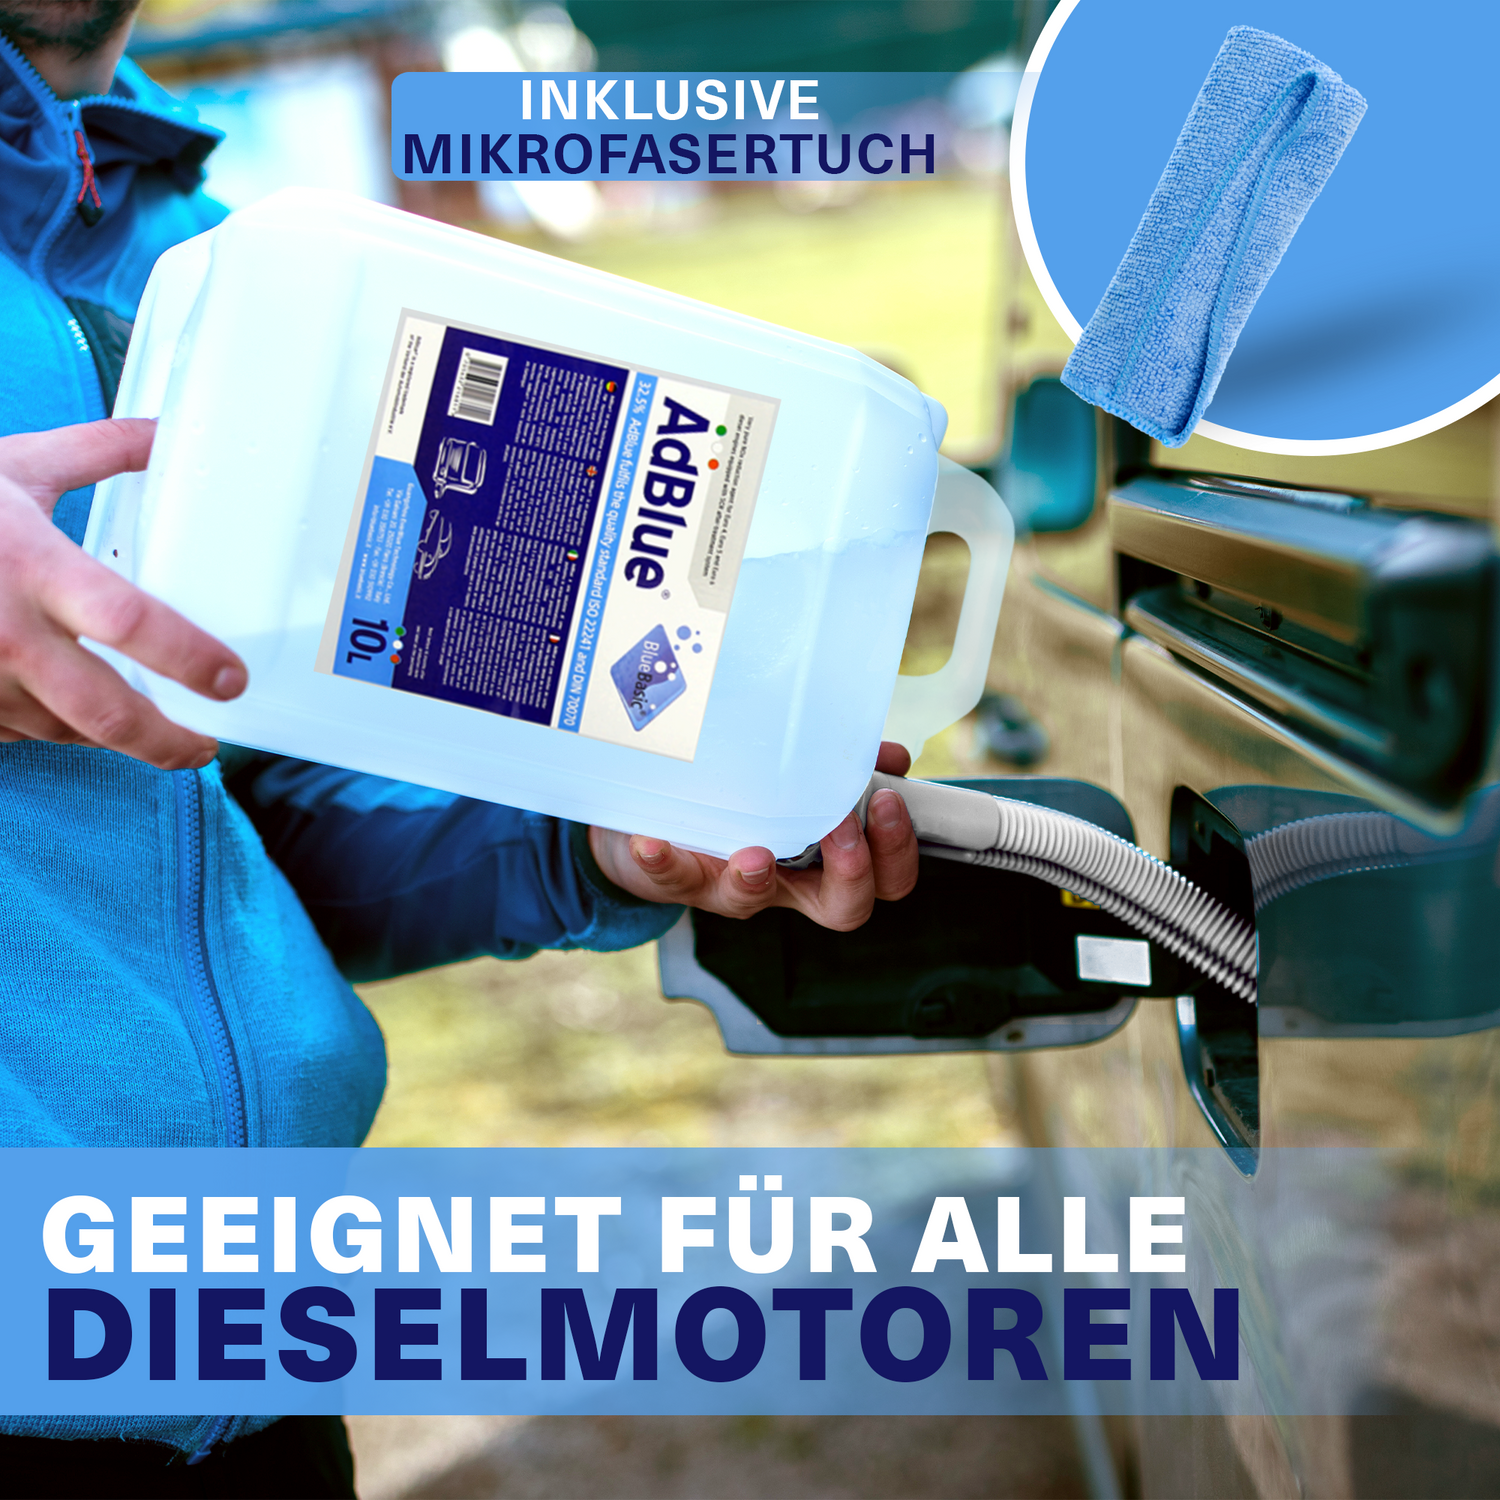 AdBlue® 20 Liter Harnstofflösung für Dieselmotoren Ad Blue (Top Angebot)